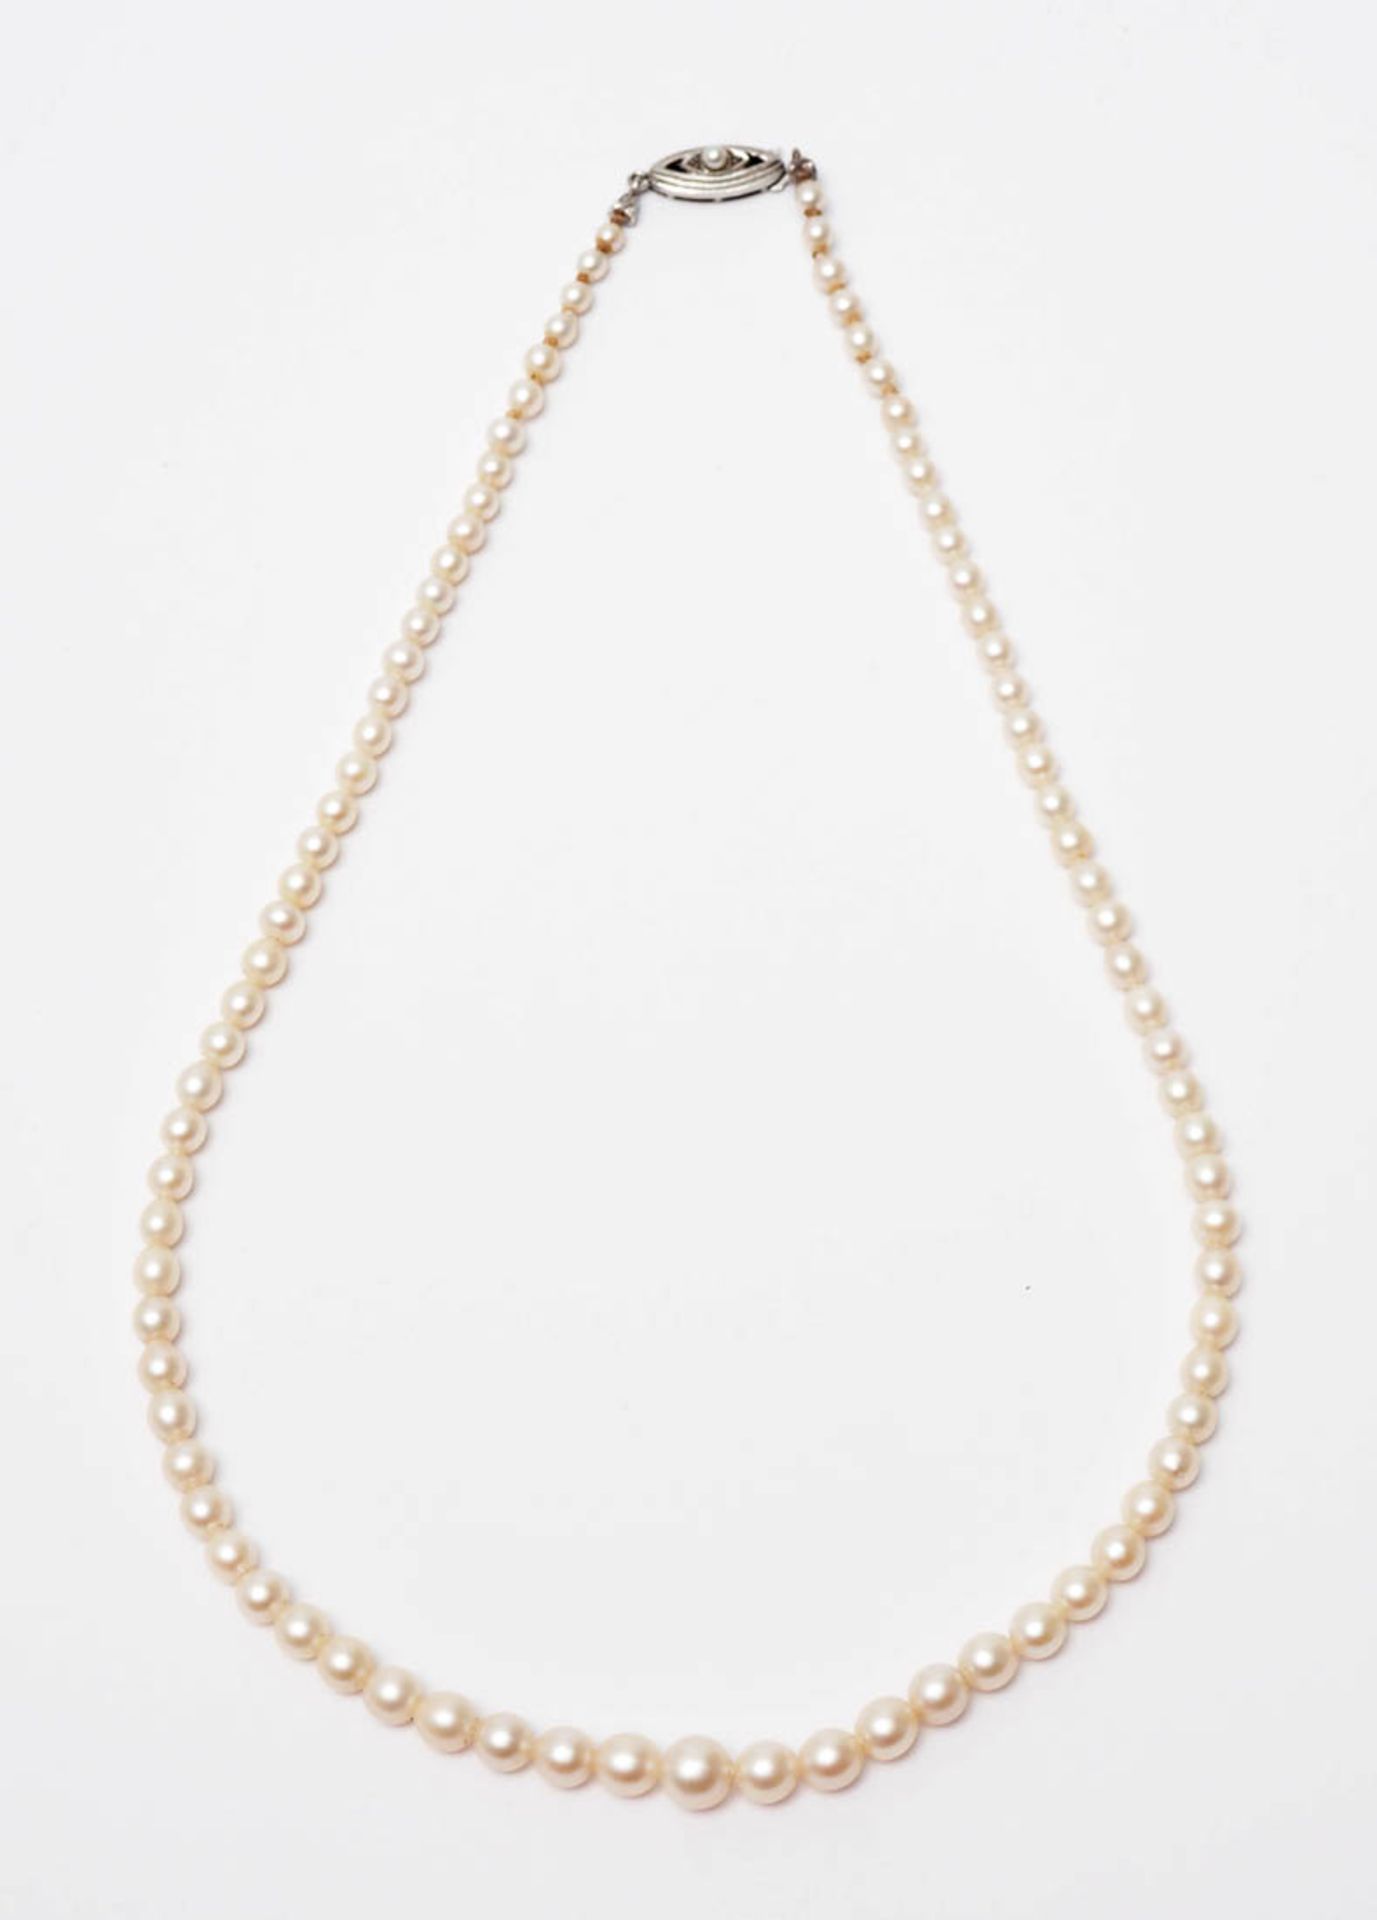 Zuchtperlkette Ovales Silberschloss mit einzelner Perle. L.46cm. - Bild 3 aus 3